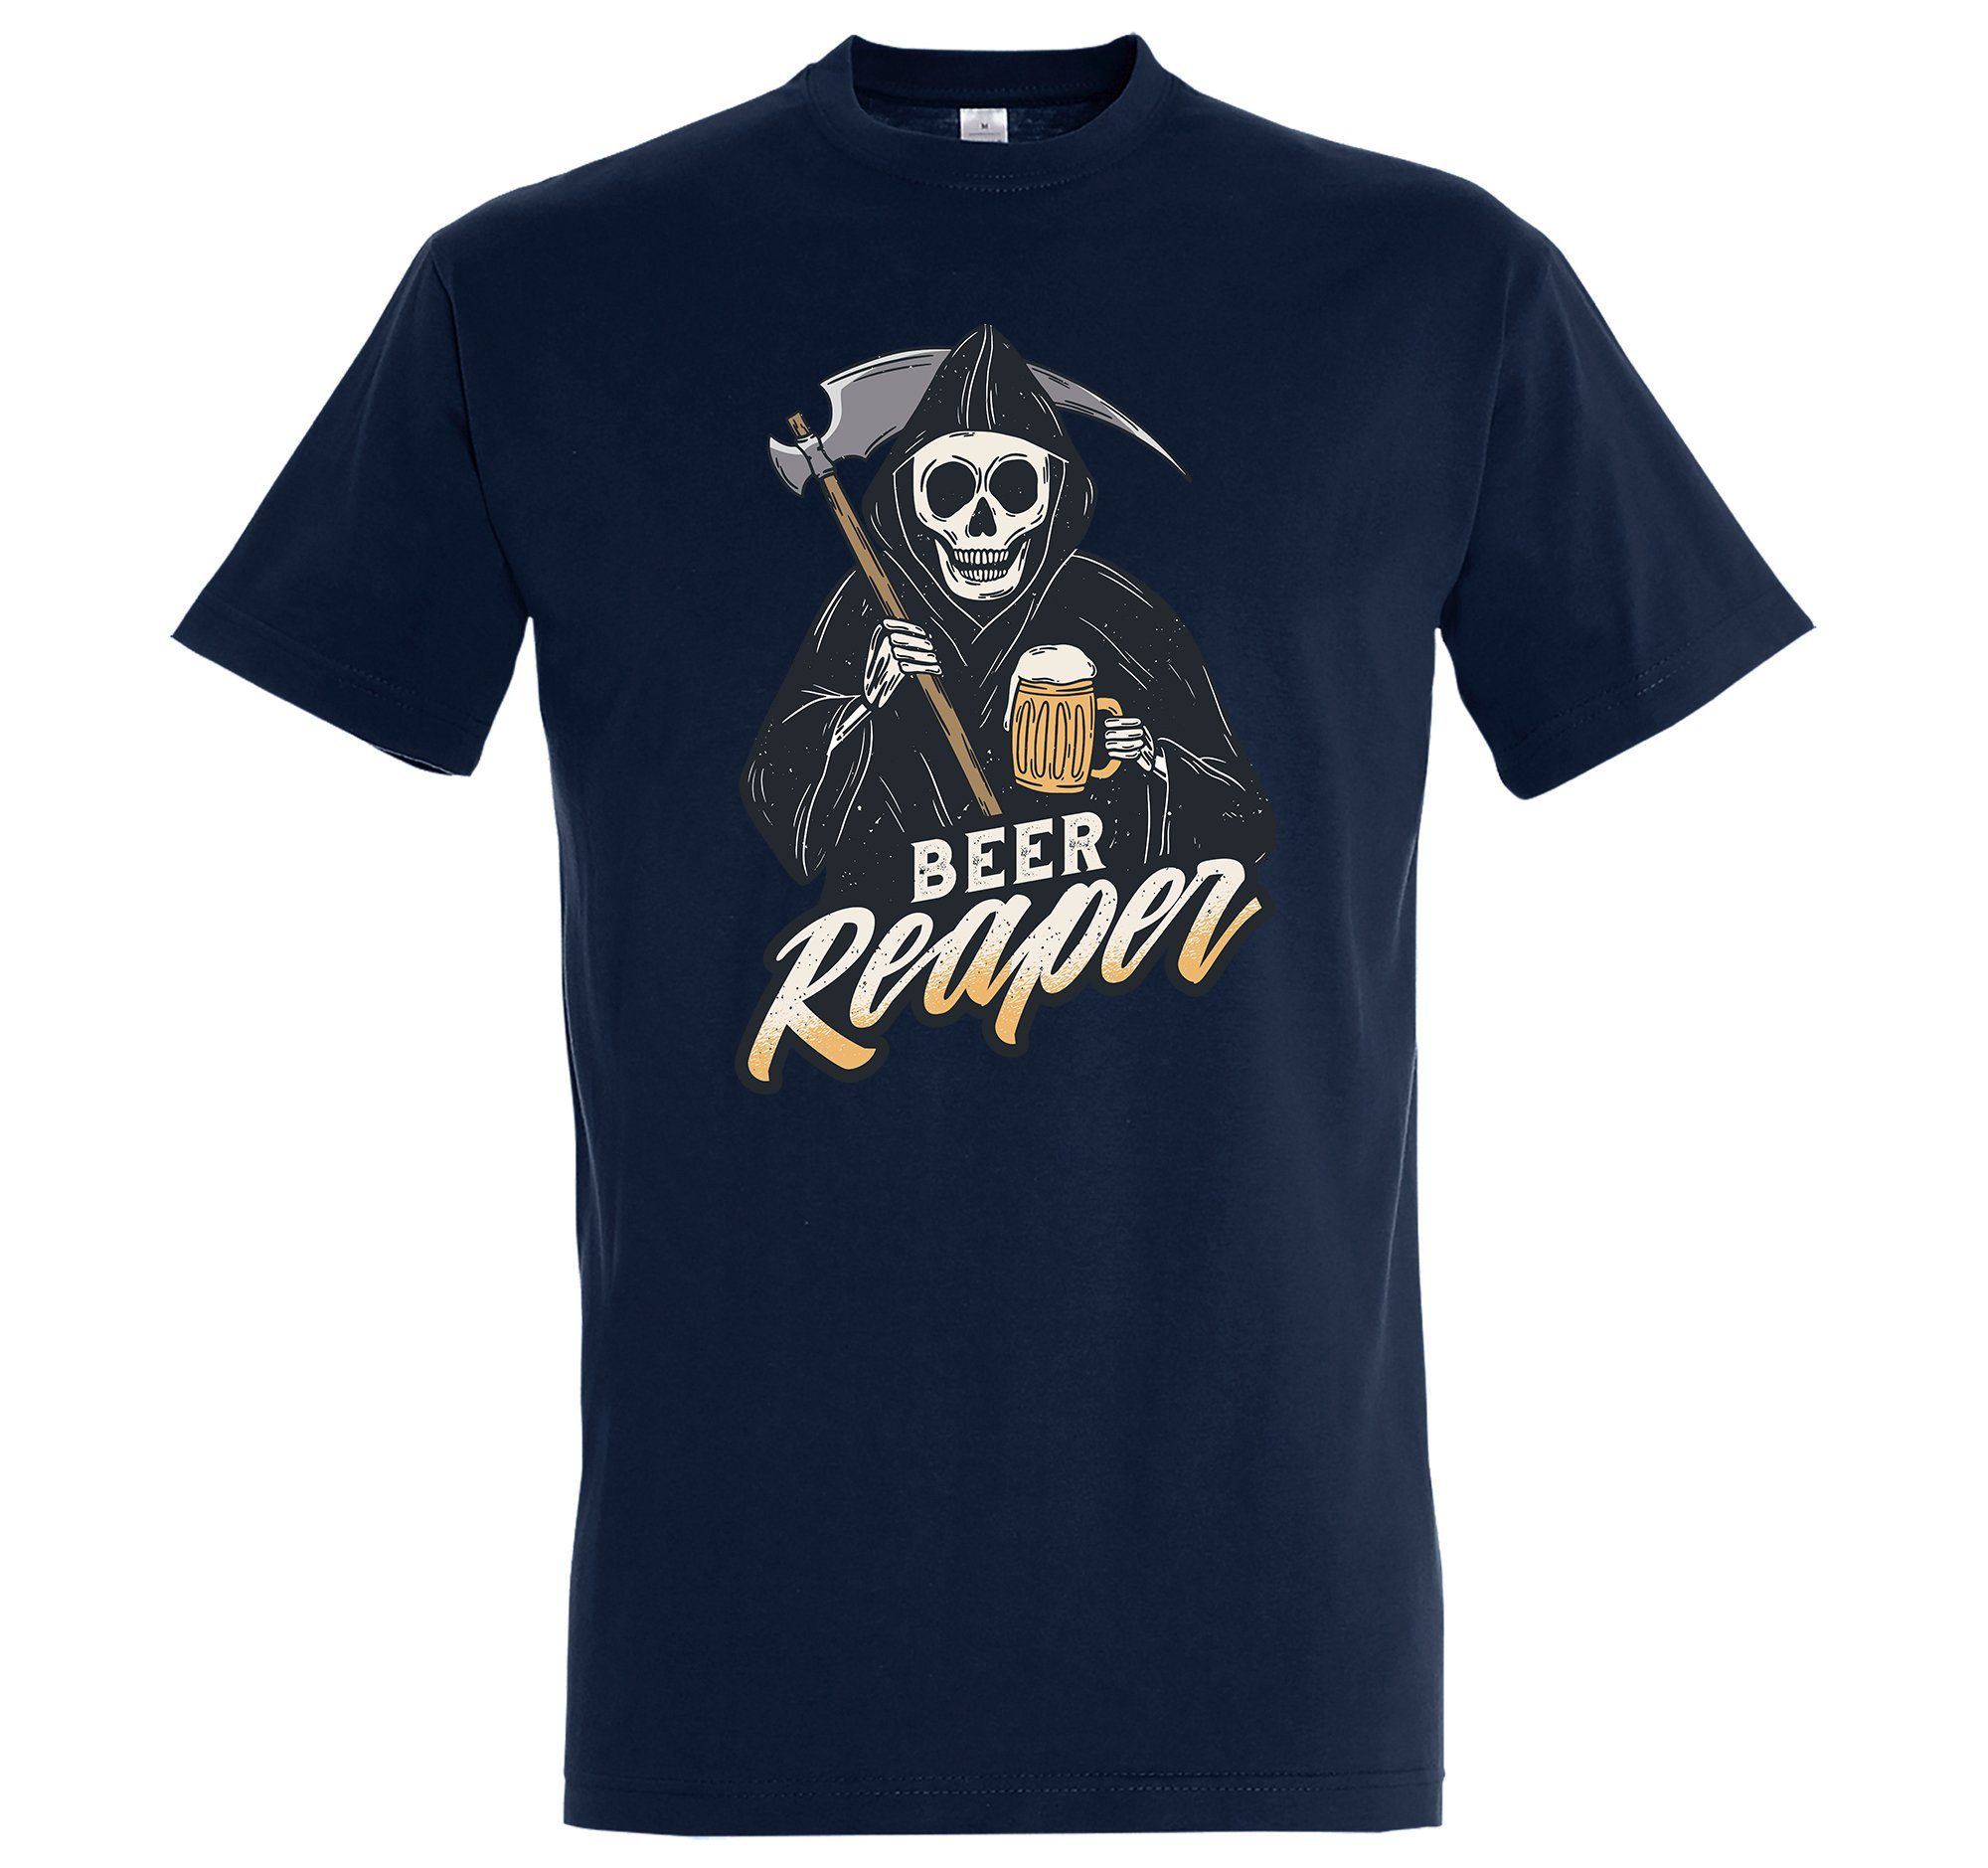 Herren lustigem Designz Youth mit Frontprint Reaper Navyblau T-Shirt Shirt Bier